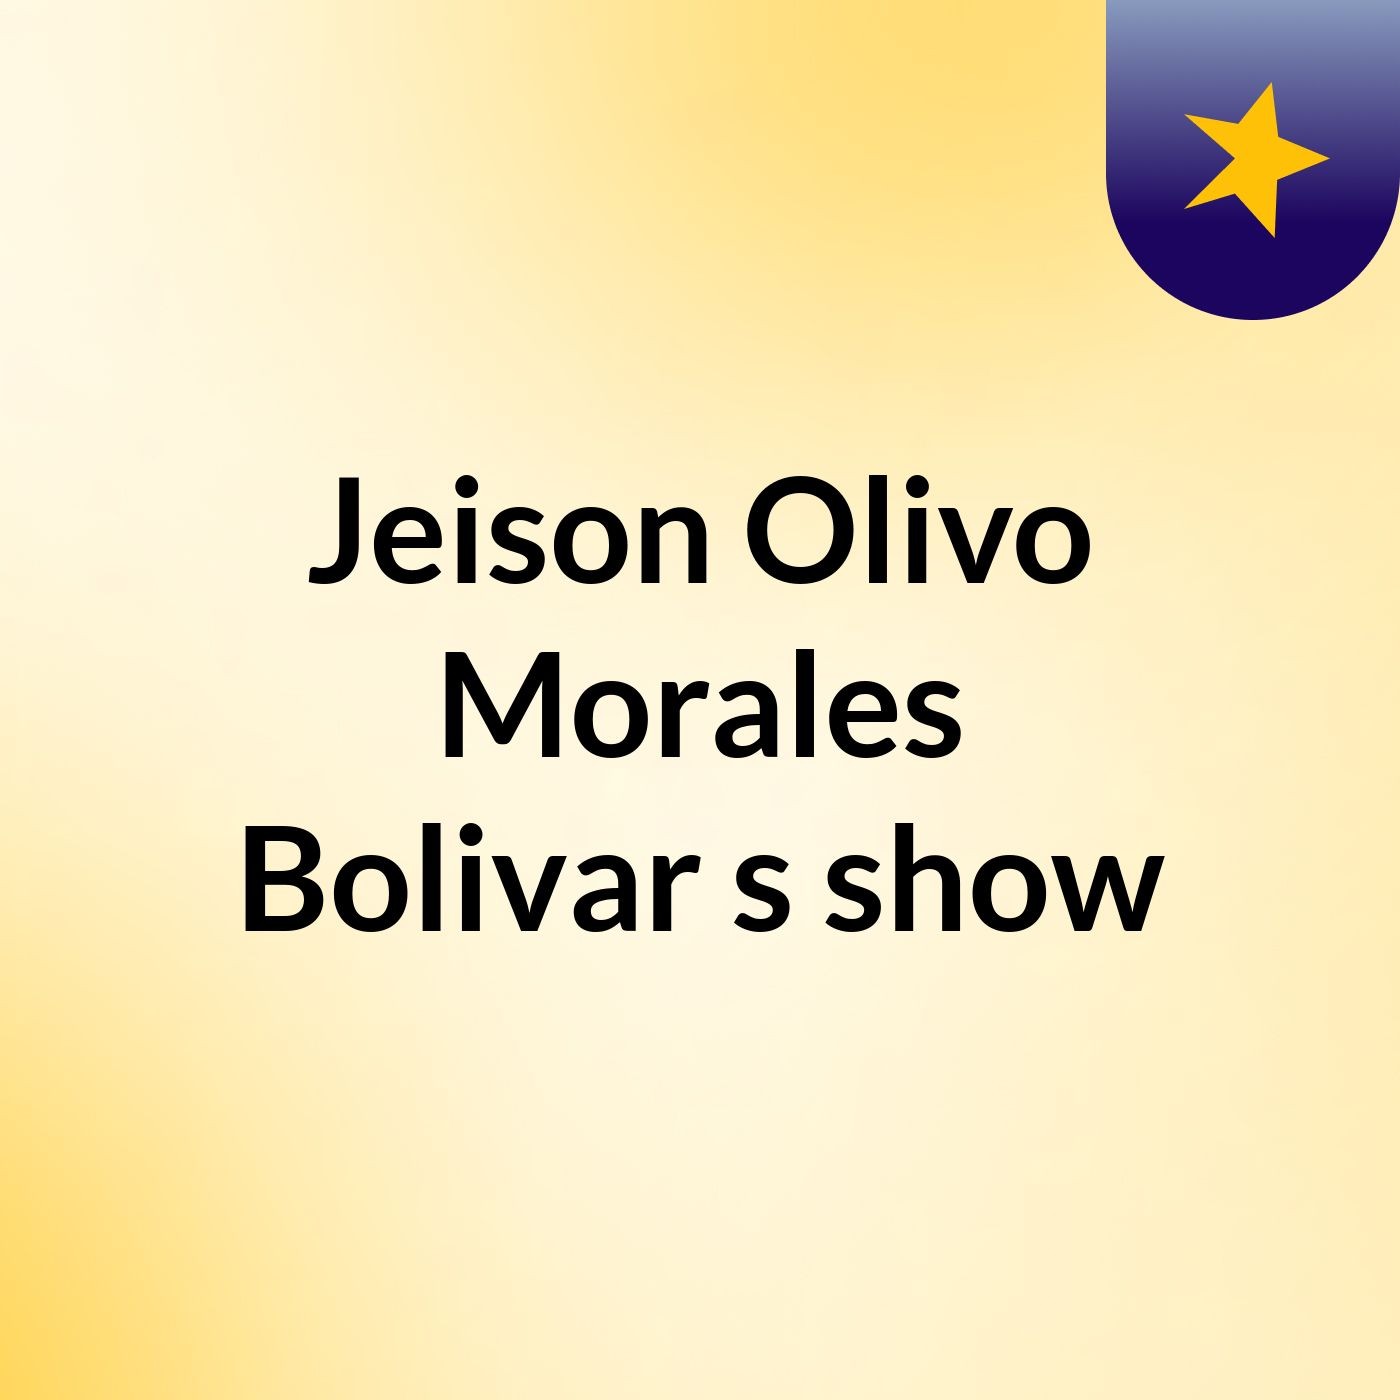 Jeison Olivo Morales Bolivar's show